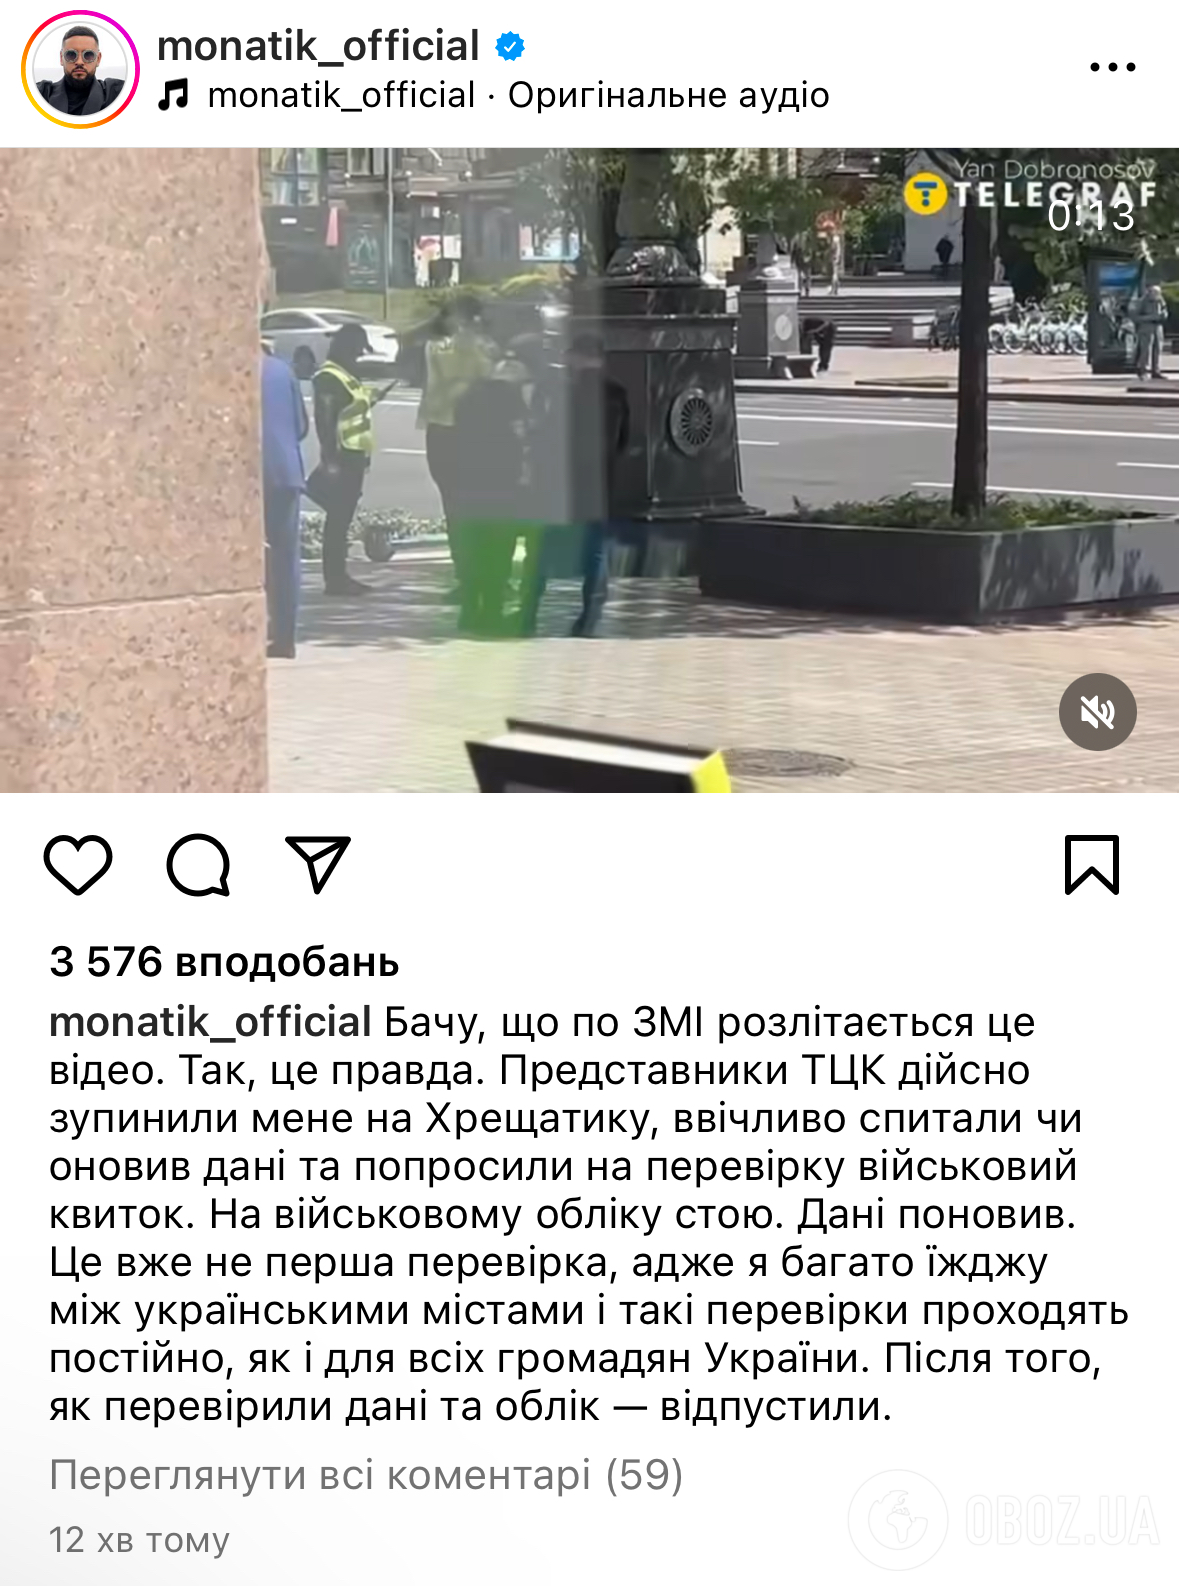 Сотрудники ТЦК остановили Монатика в центре Киева: певец выступил с заявлением. Видео